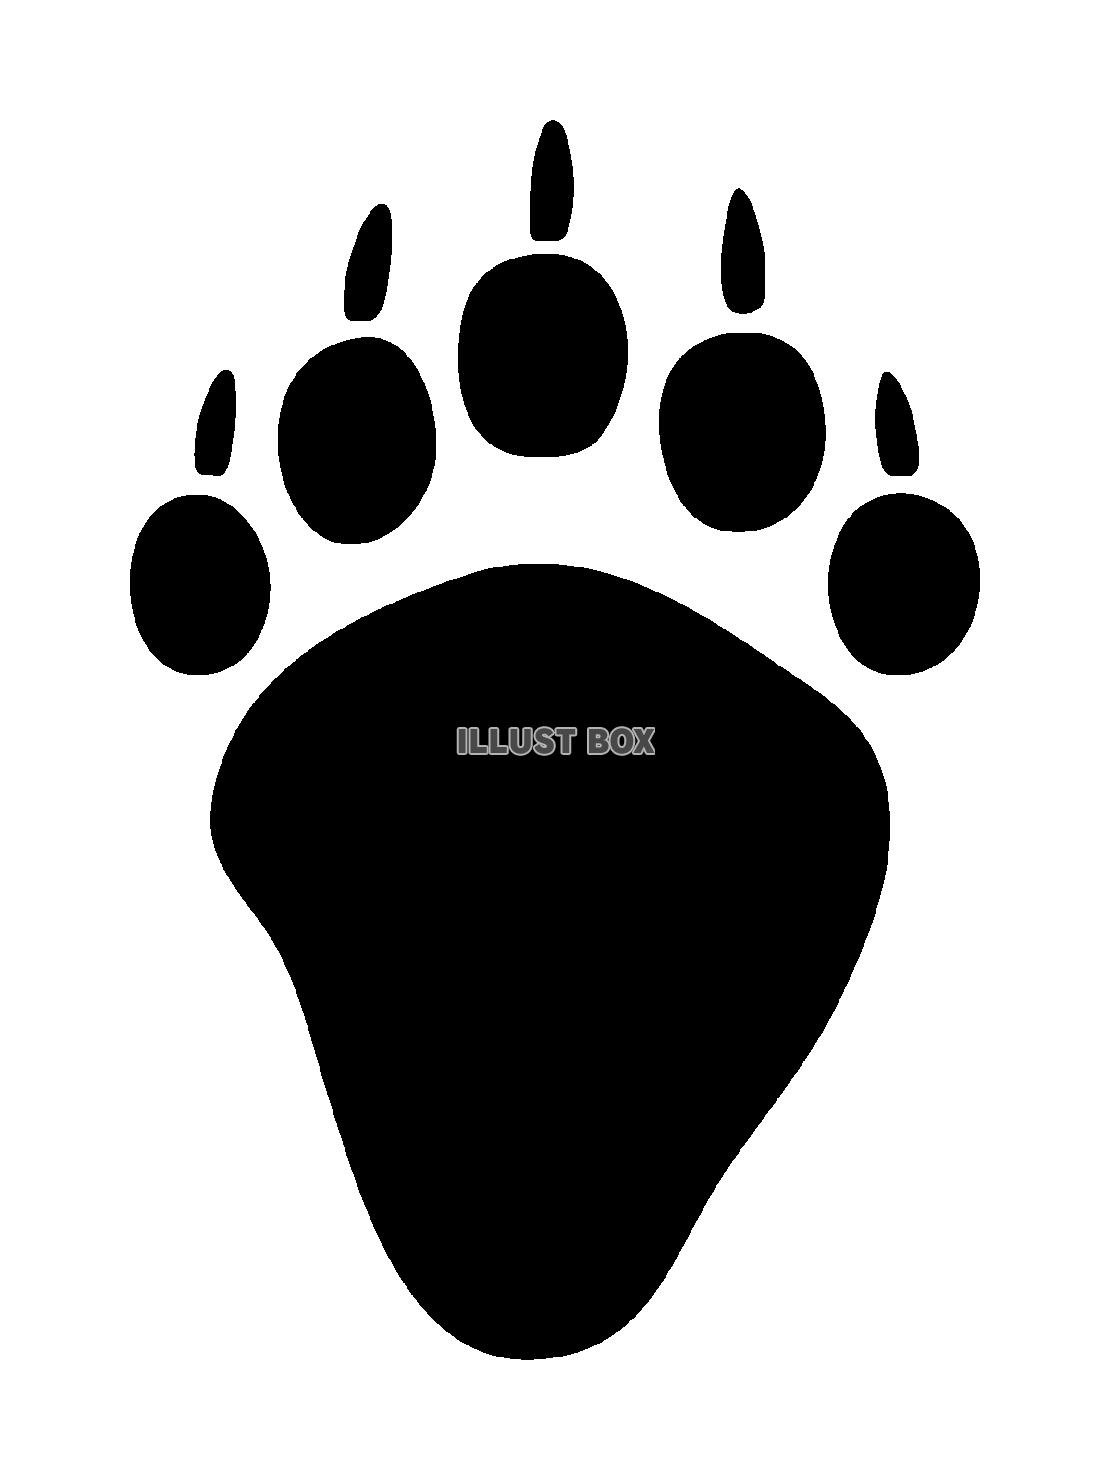 クマの後ろ脚の足跡のイラスト